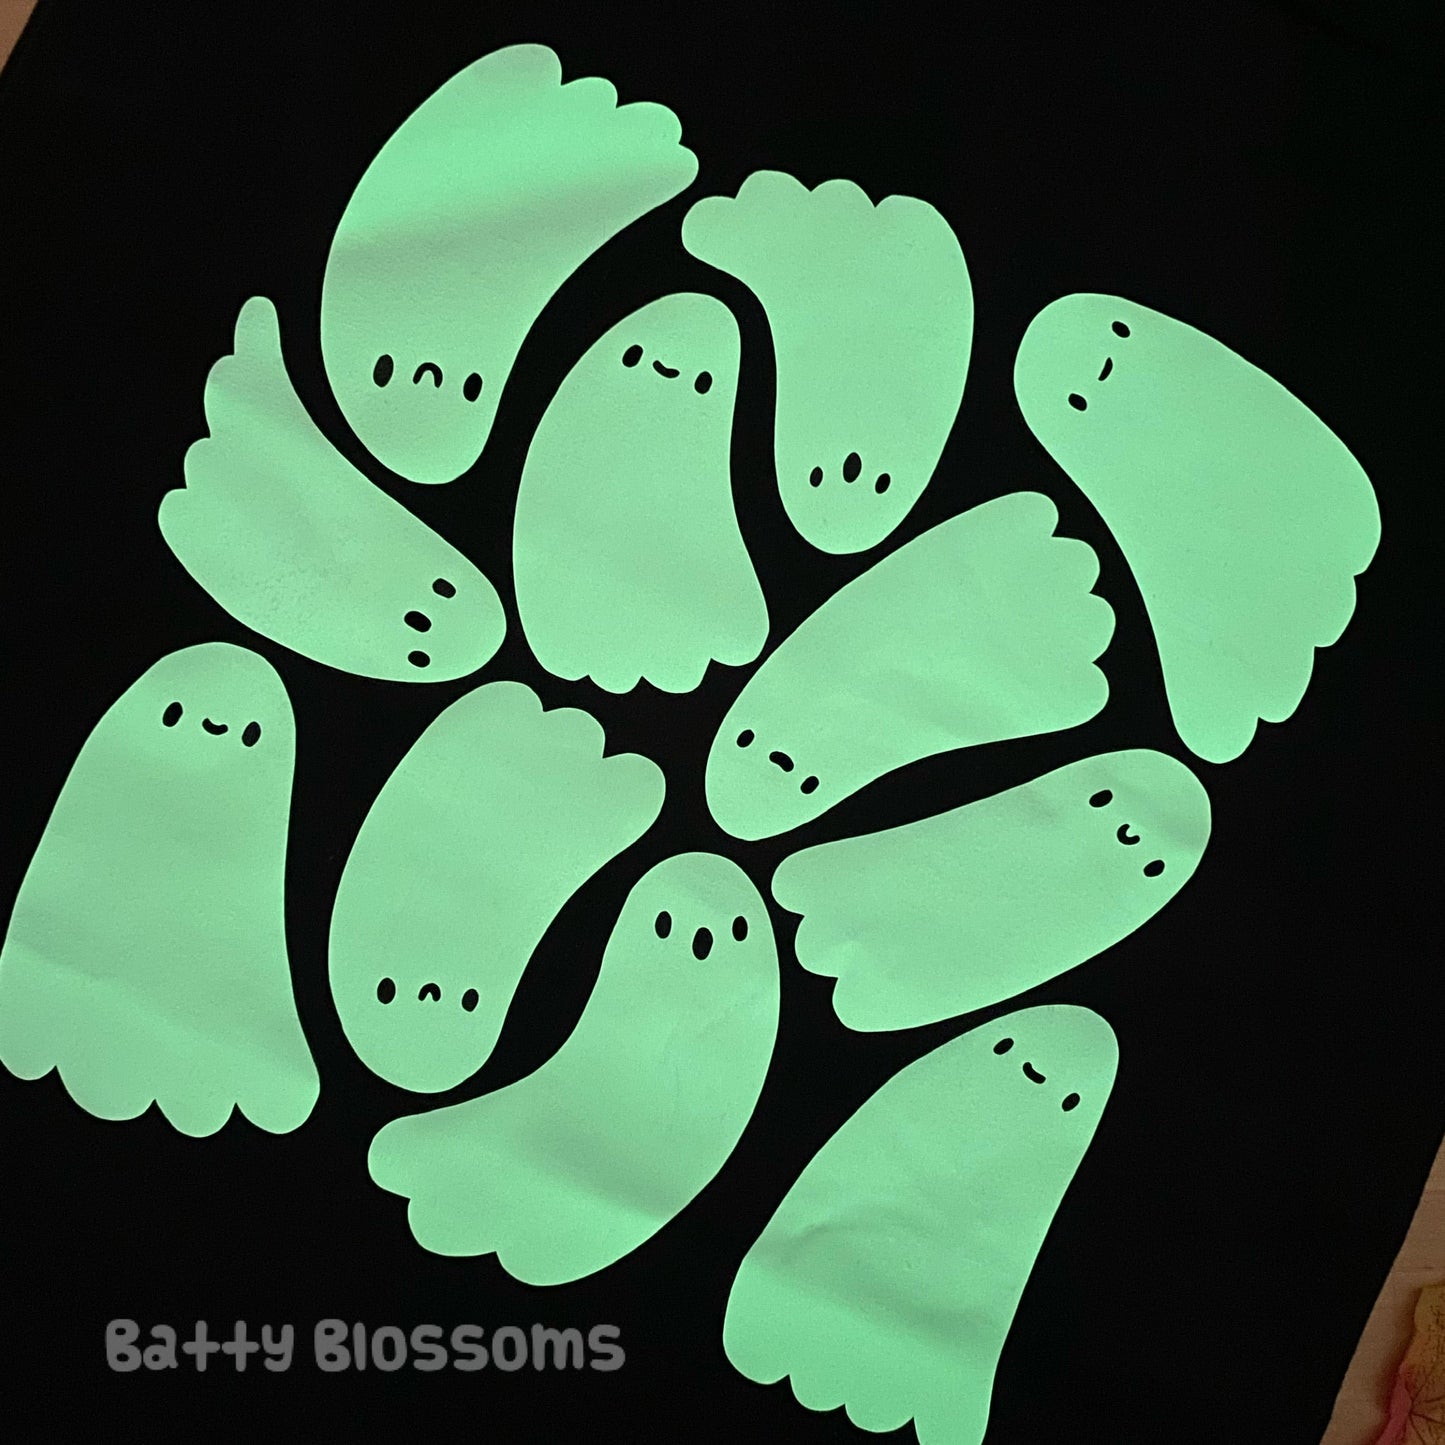 SECONDS Ghostie Gang Glow-in-the-Dark tote bag